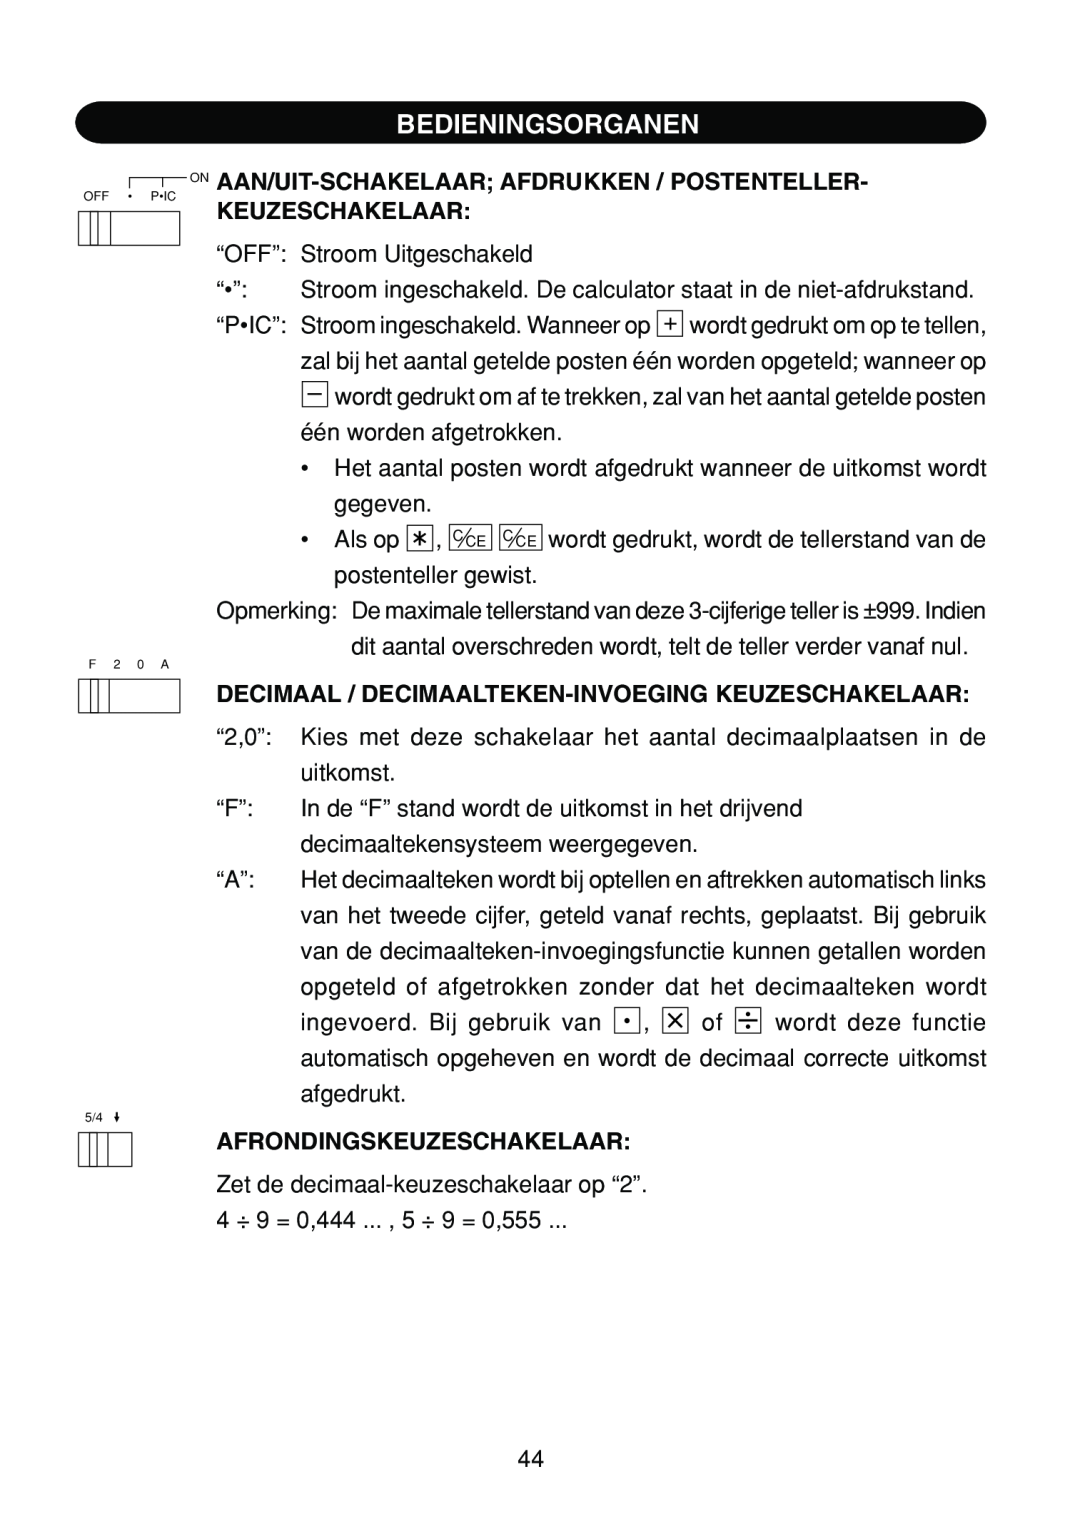 Sharp EL-1801C operation manual Bedieningsorganen, On Aan/Uit-Schakelaar Afdrukken / Postenteller, Keuzeschakelaar 